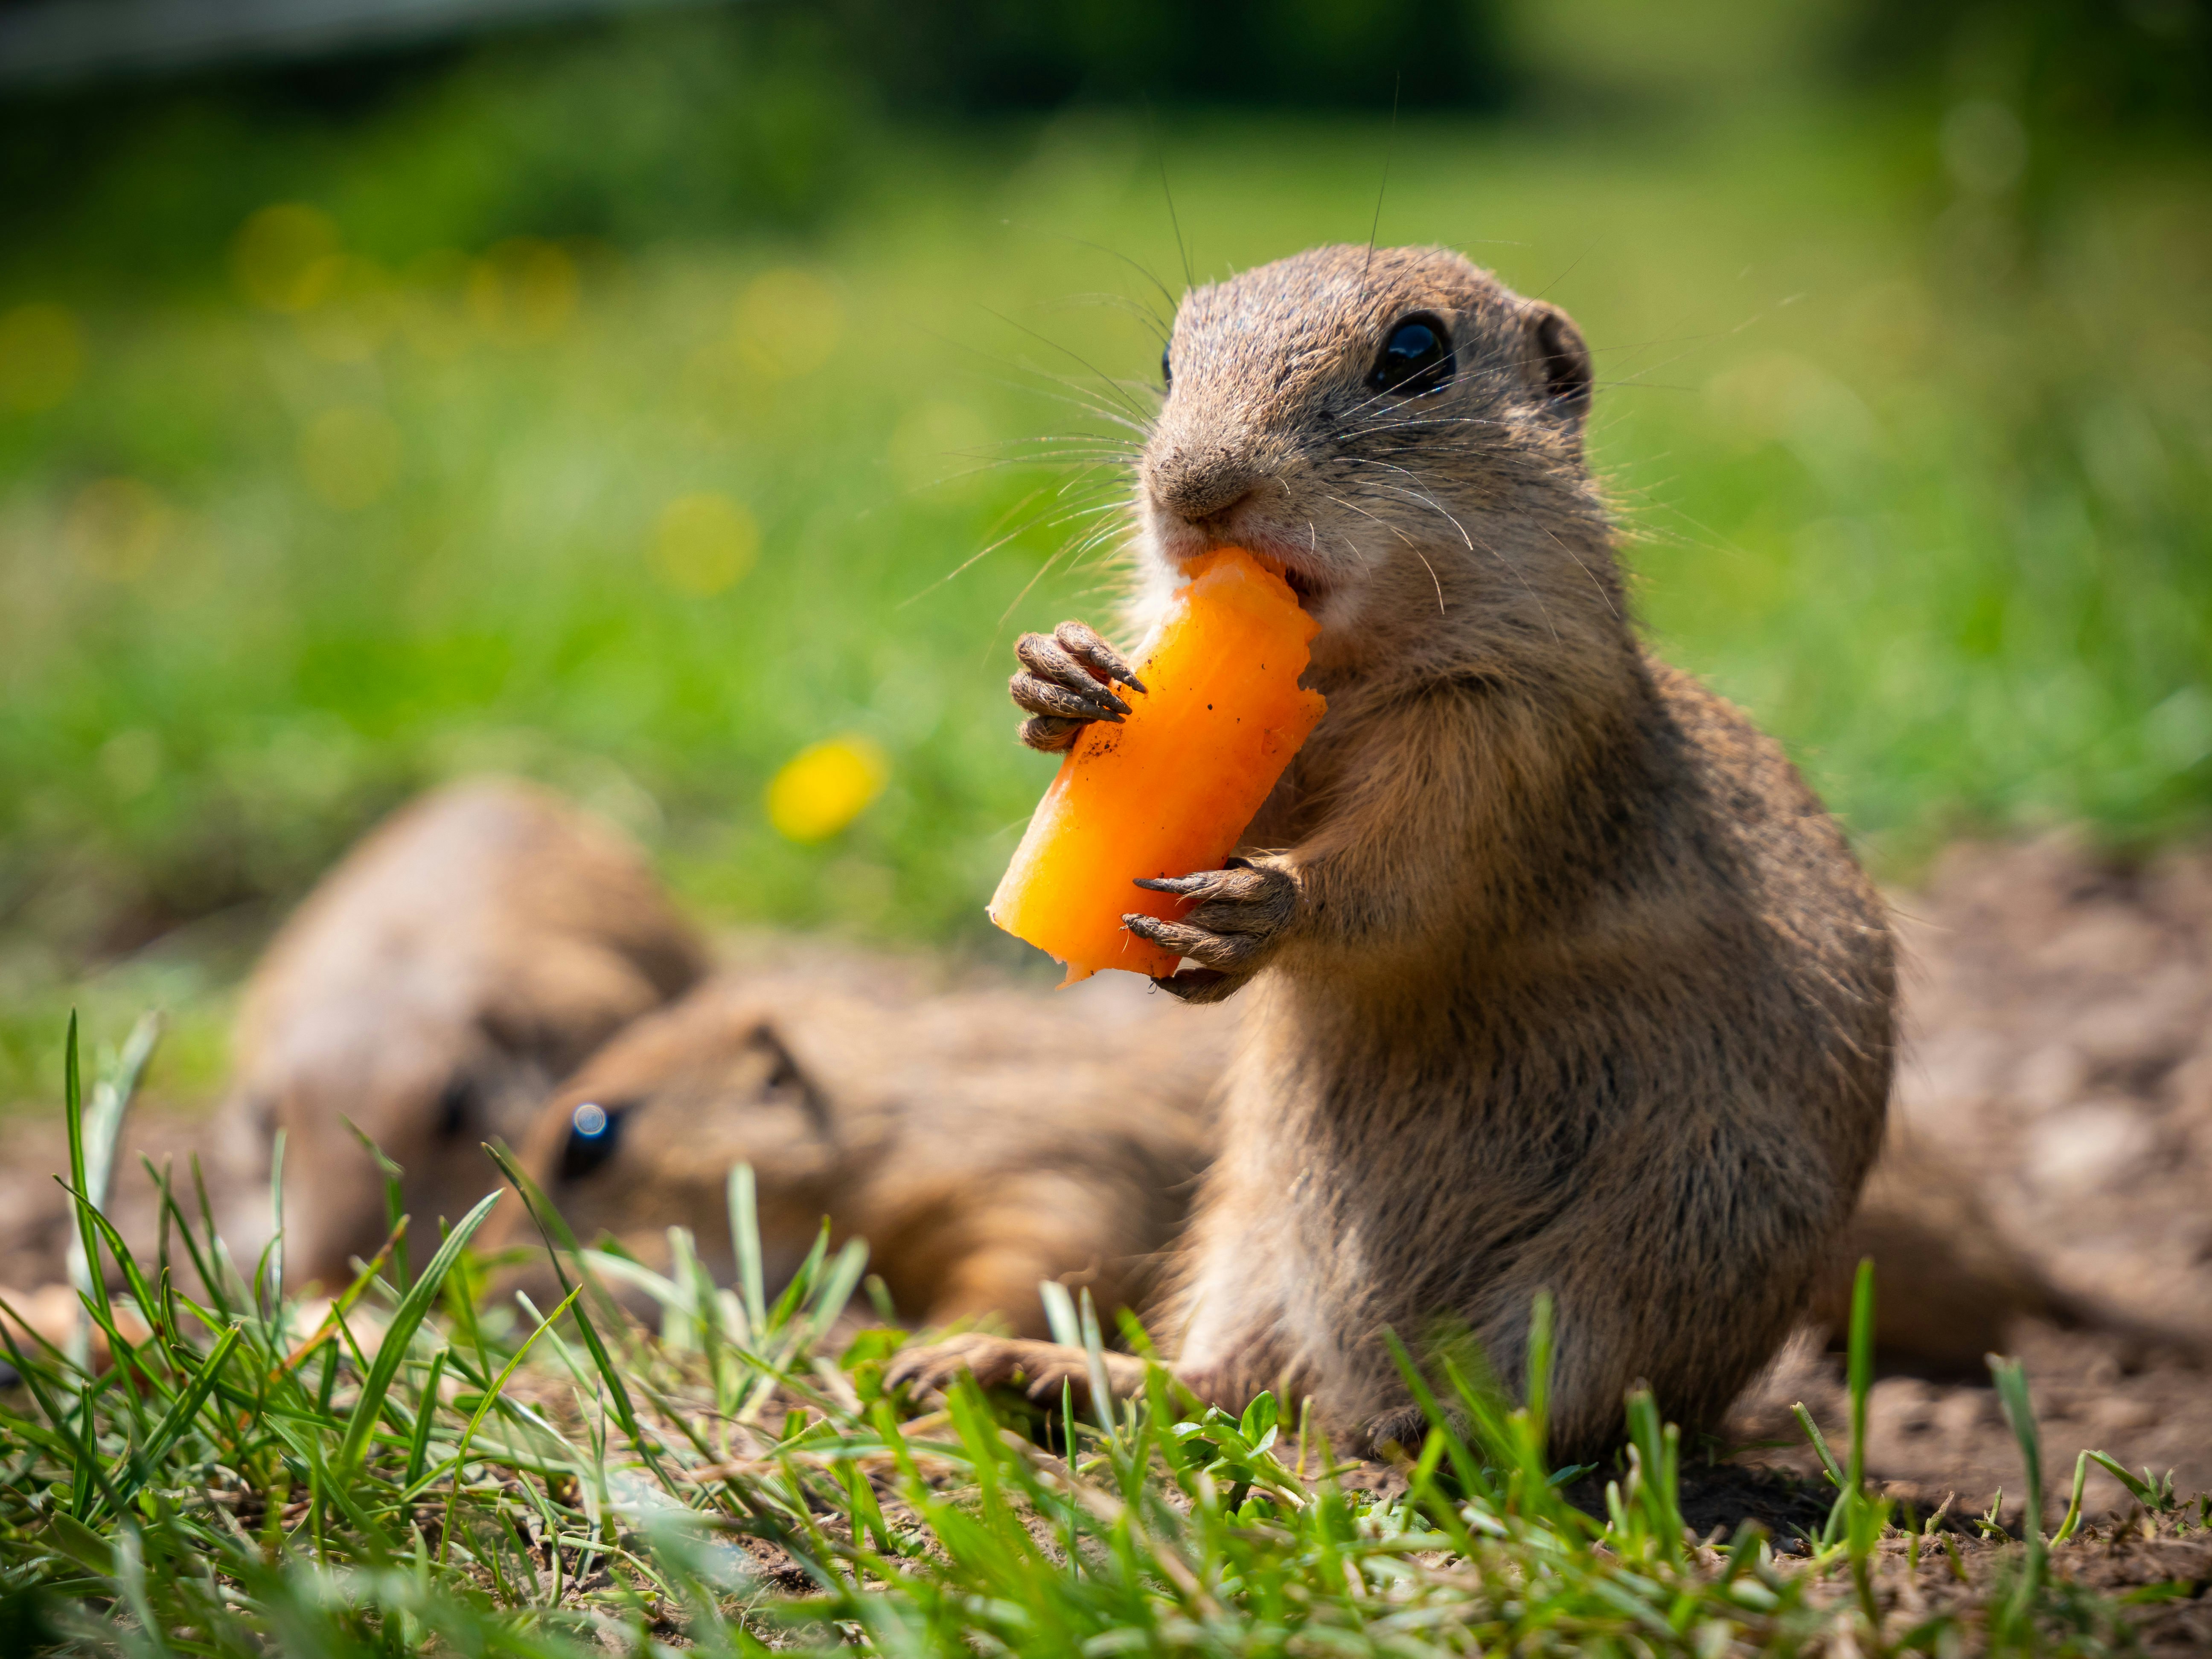 brown squirrel eating yellow fruit